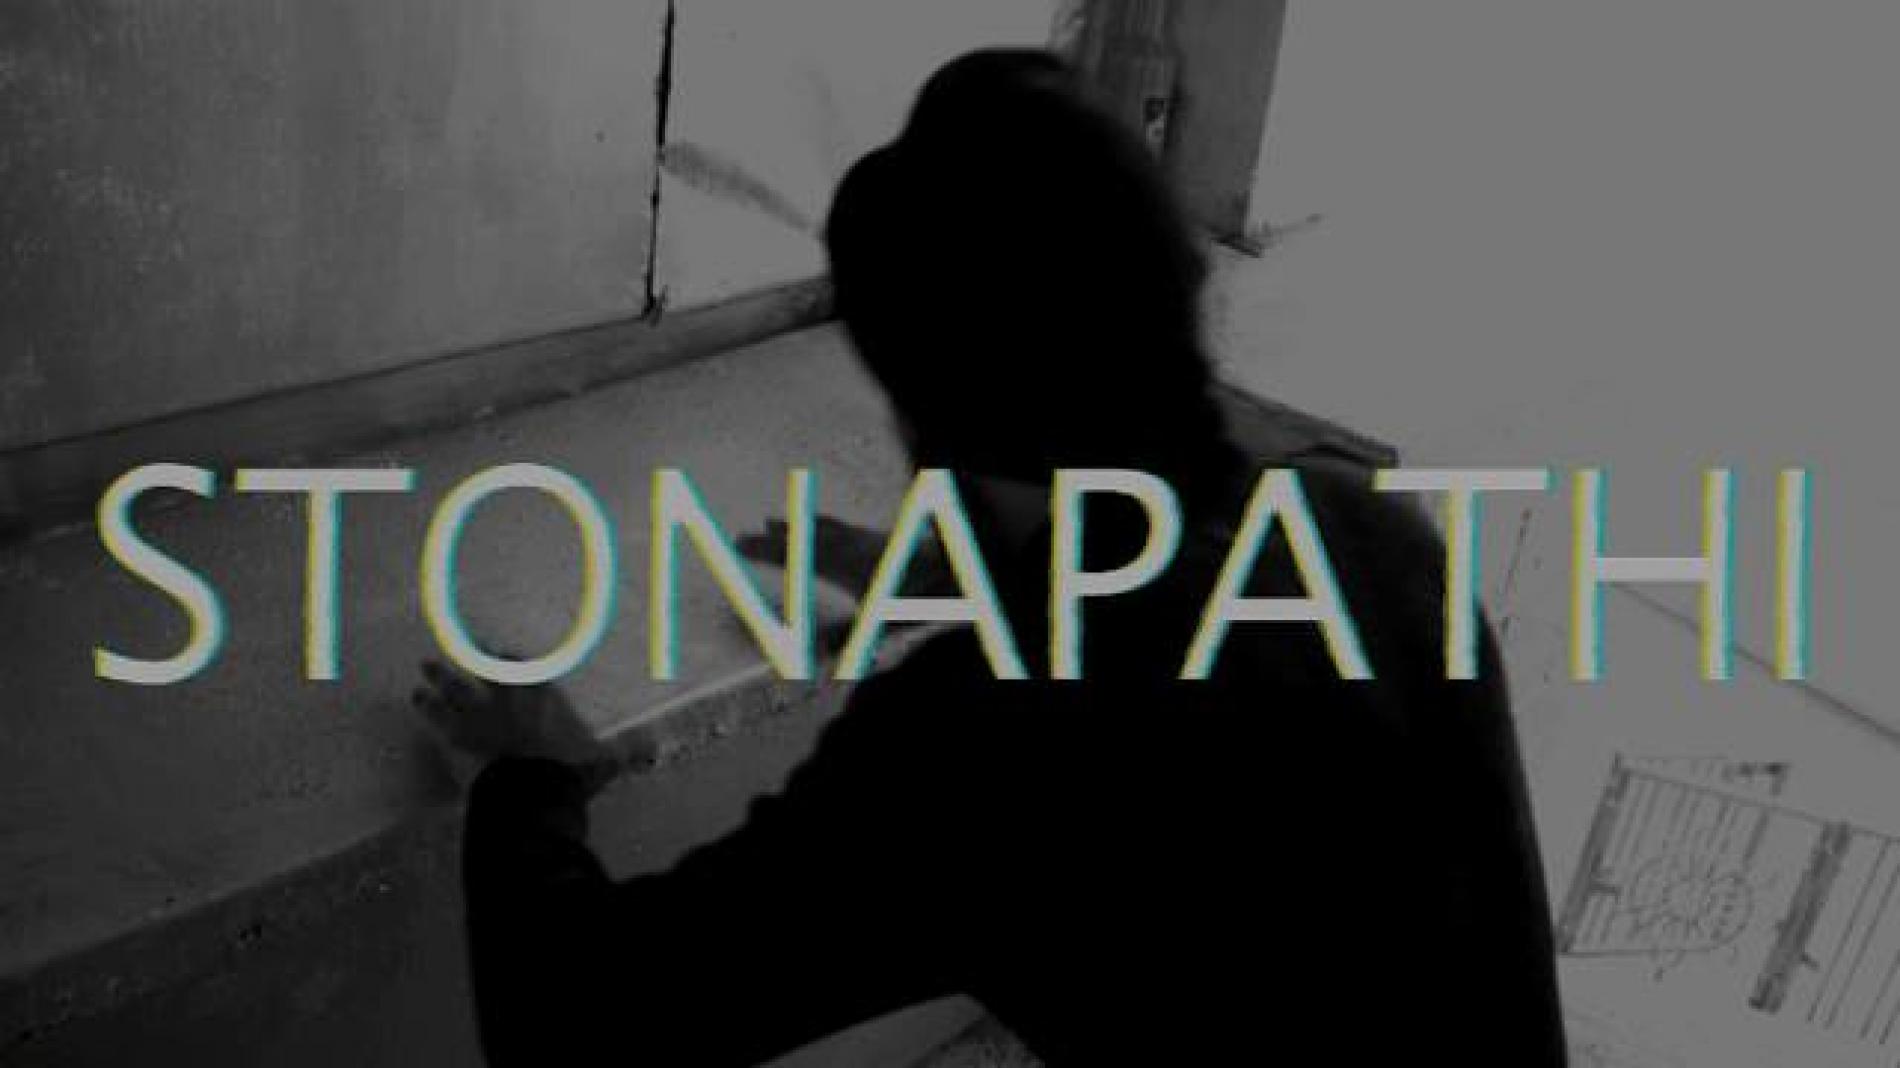 Stonapathi – Paa Wee Eatha Yaa Wee